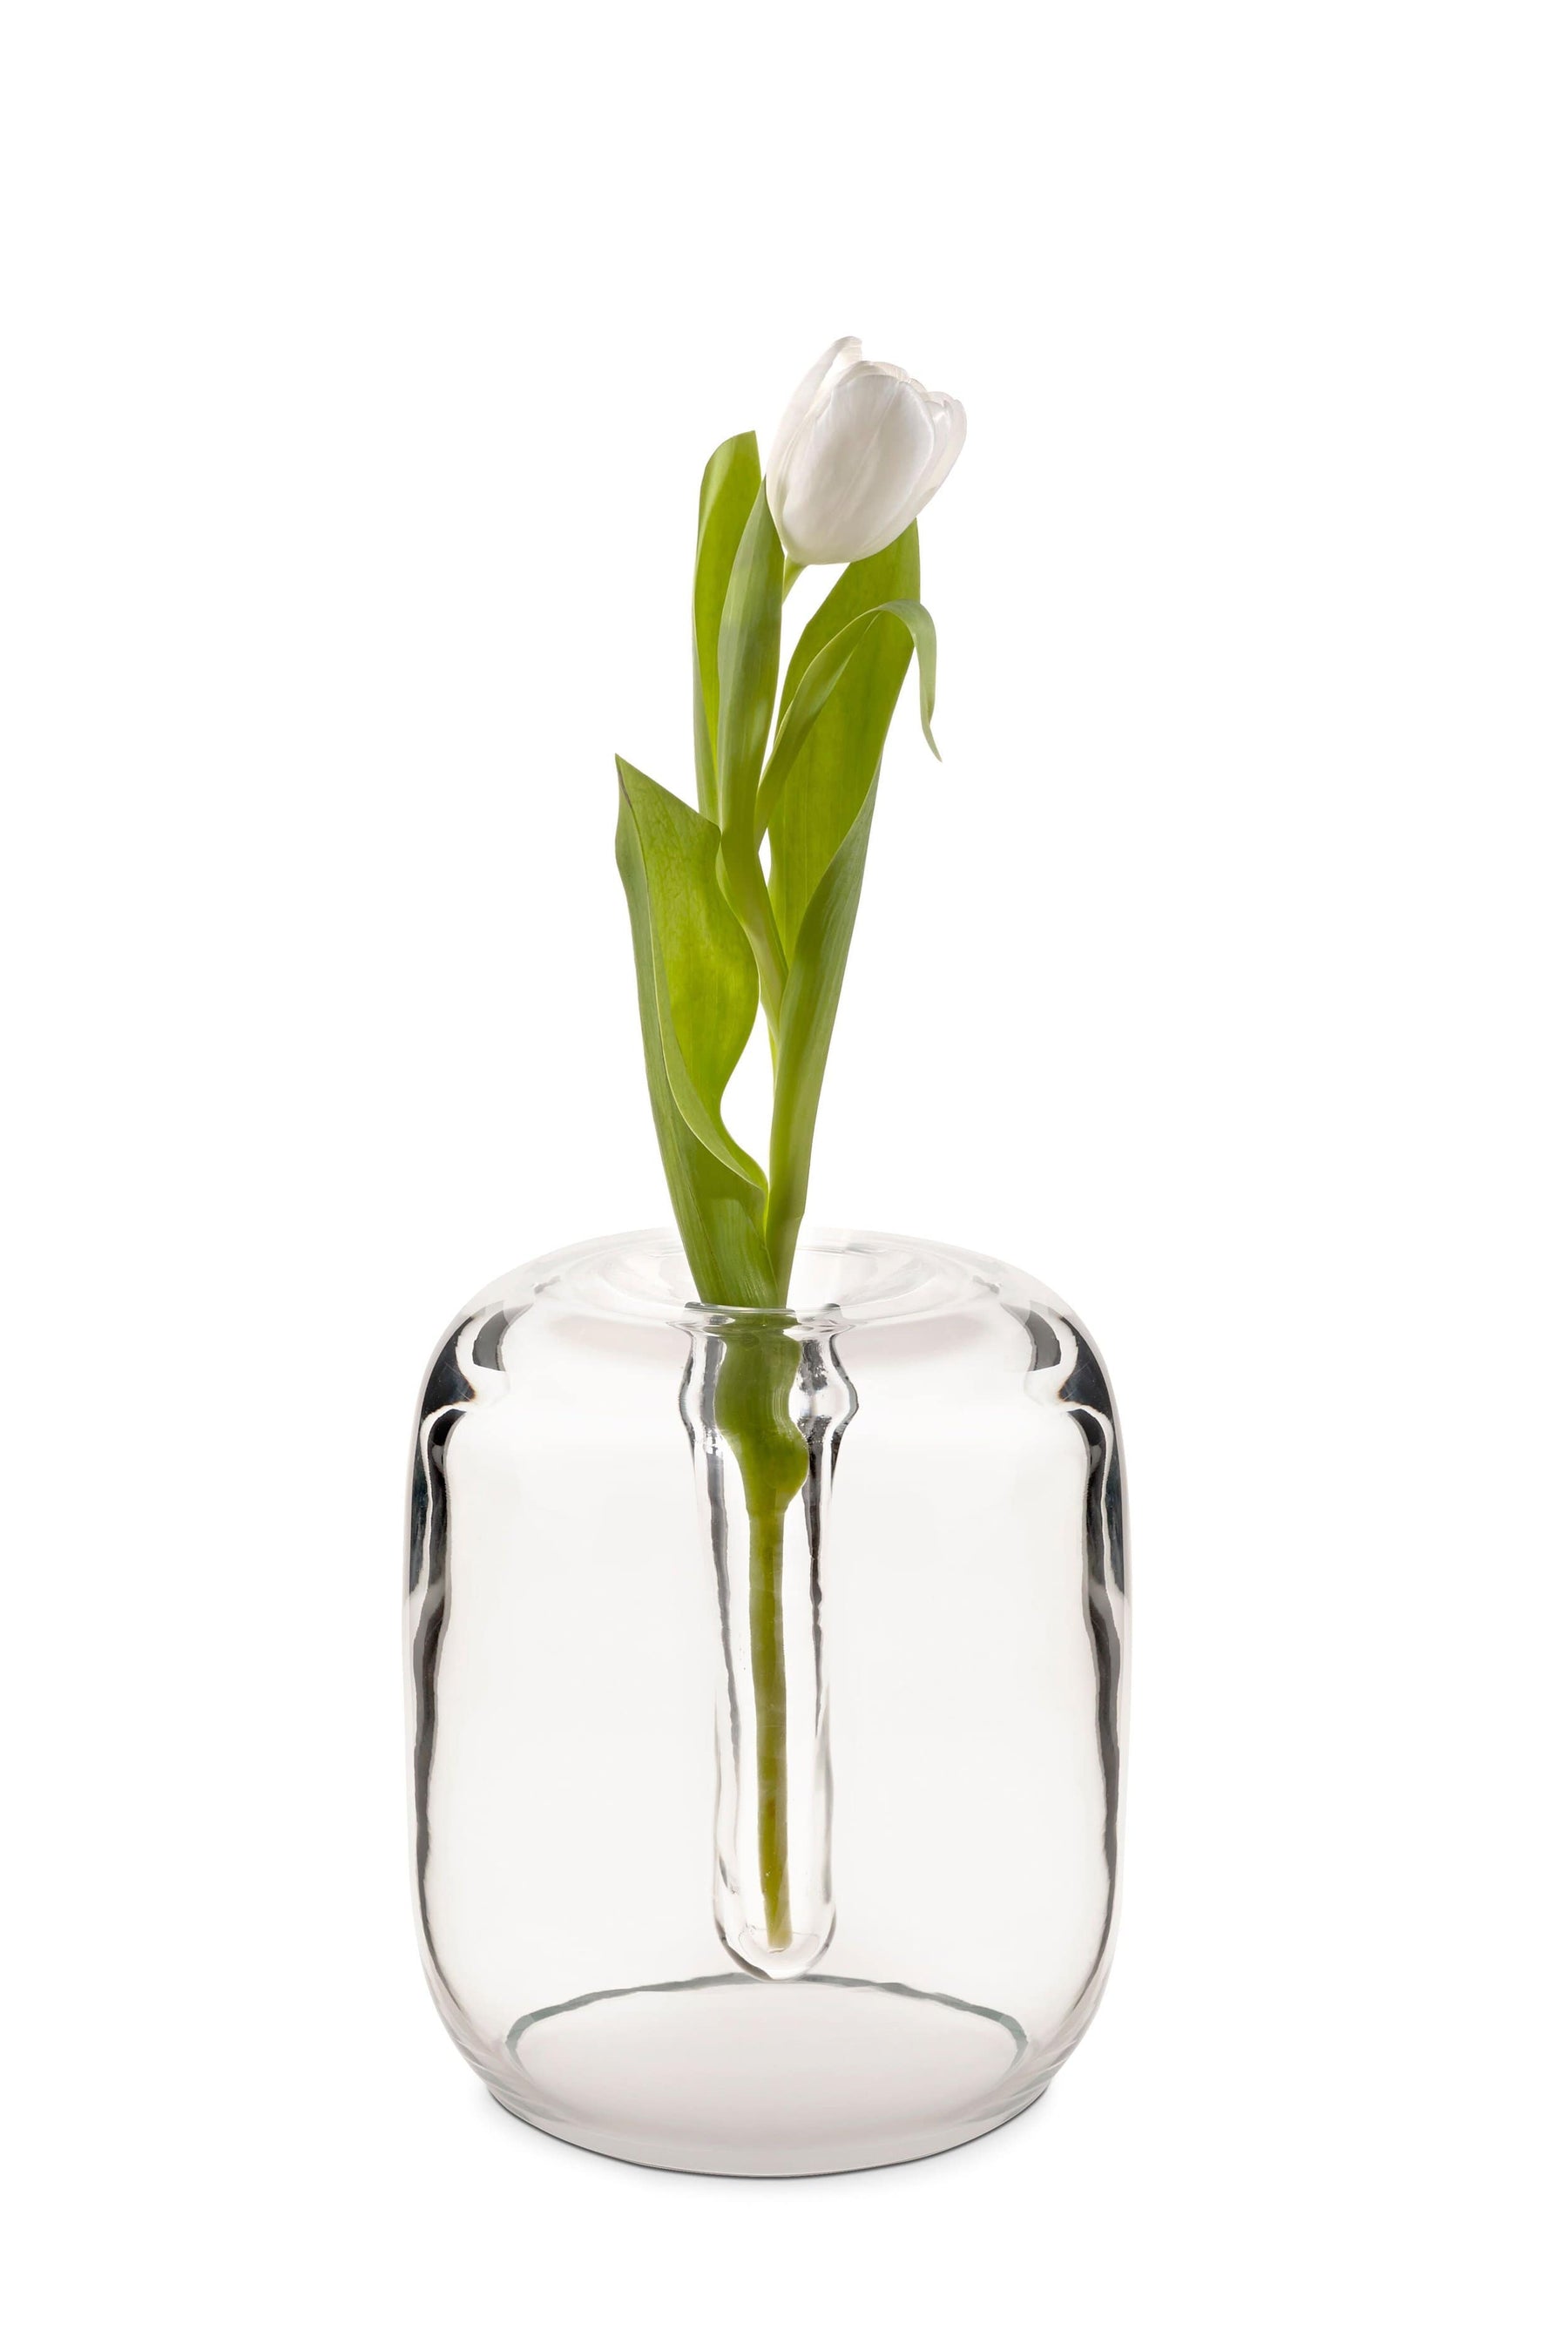 Kristine F. Melvaer Vase | When Objects Work | JANGEORGe Interior Design